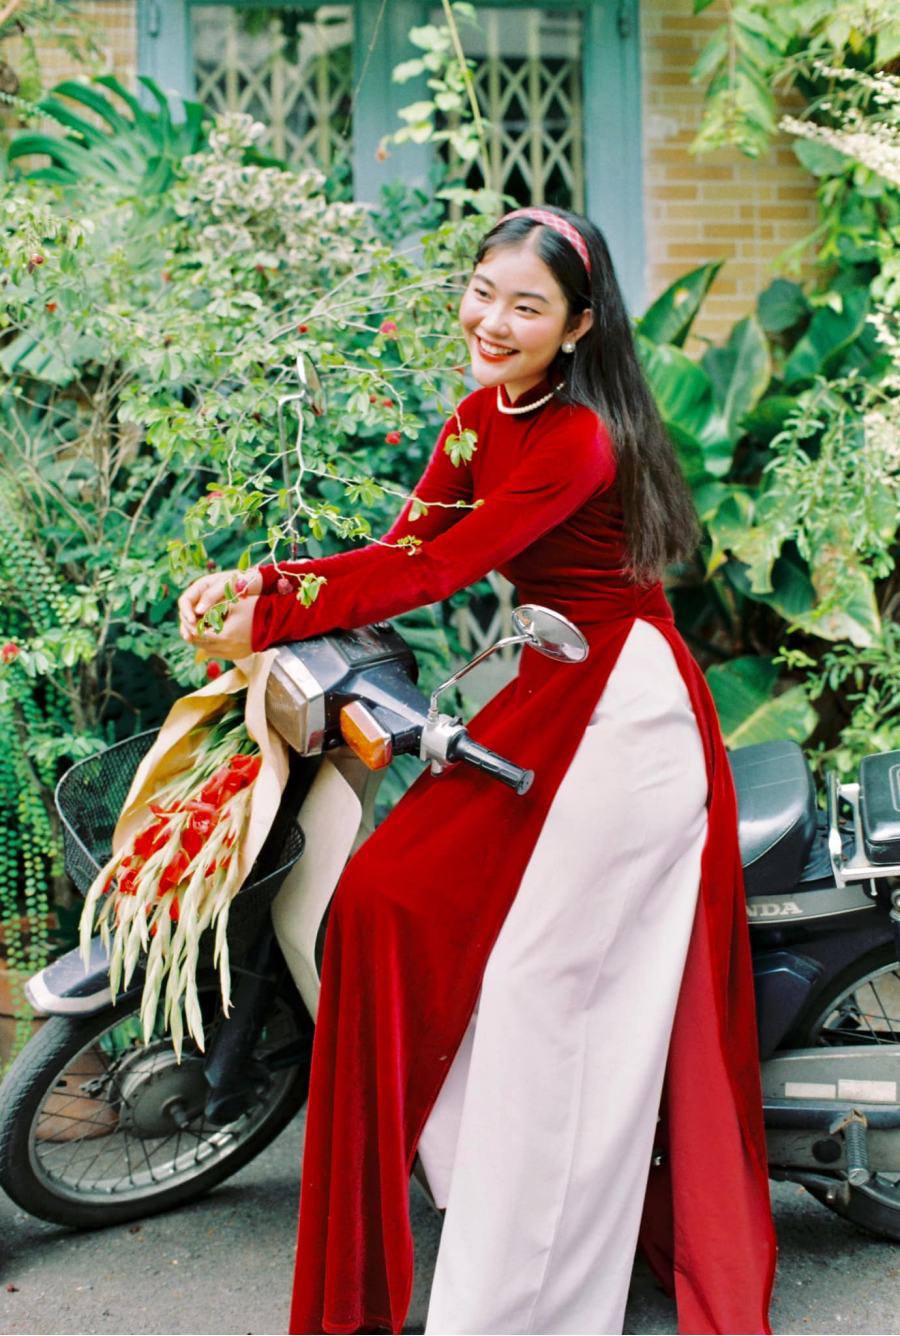 Áo dài Tết là trang phục truyền thống của người Việt, trang phục đẹp và kiêu sa tôn lên nhan sắc của các chị em trong những ngày Tết. Hãy cùng chiêm ngưỡng những bức ảnh áo dài Tết đẹp lung linh và sang trọng.